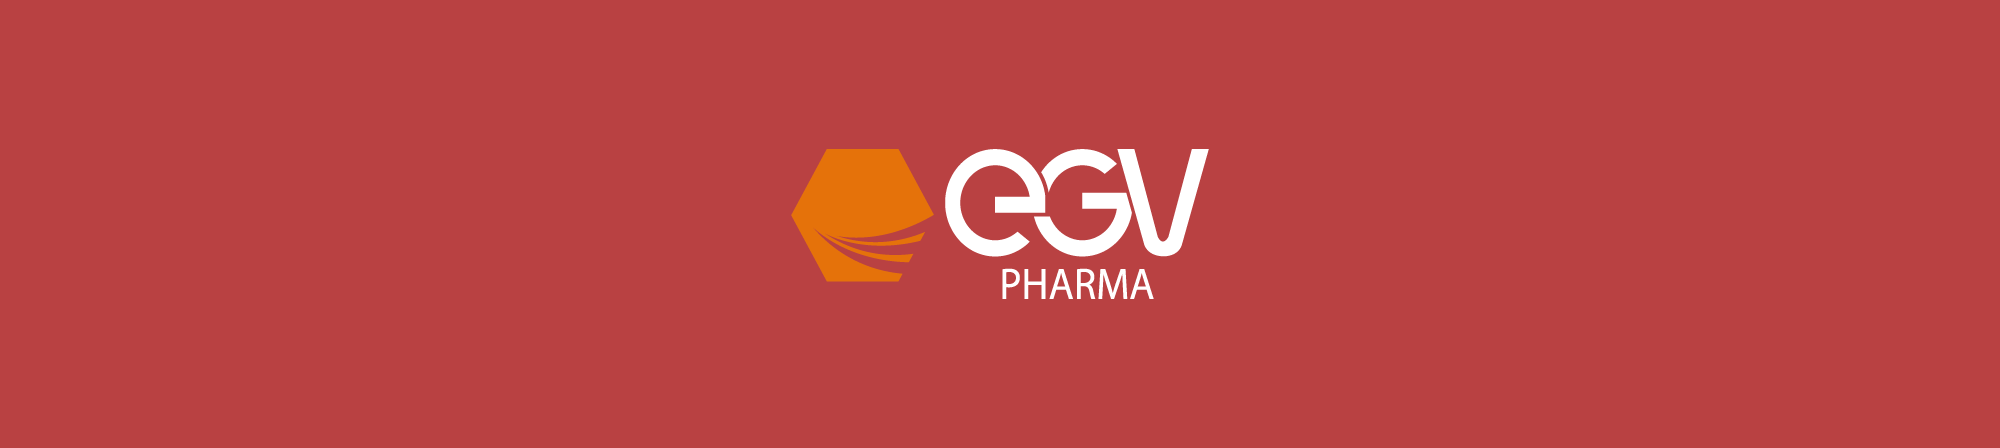 EGV Pharma – Impressos